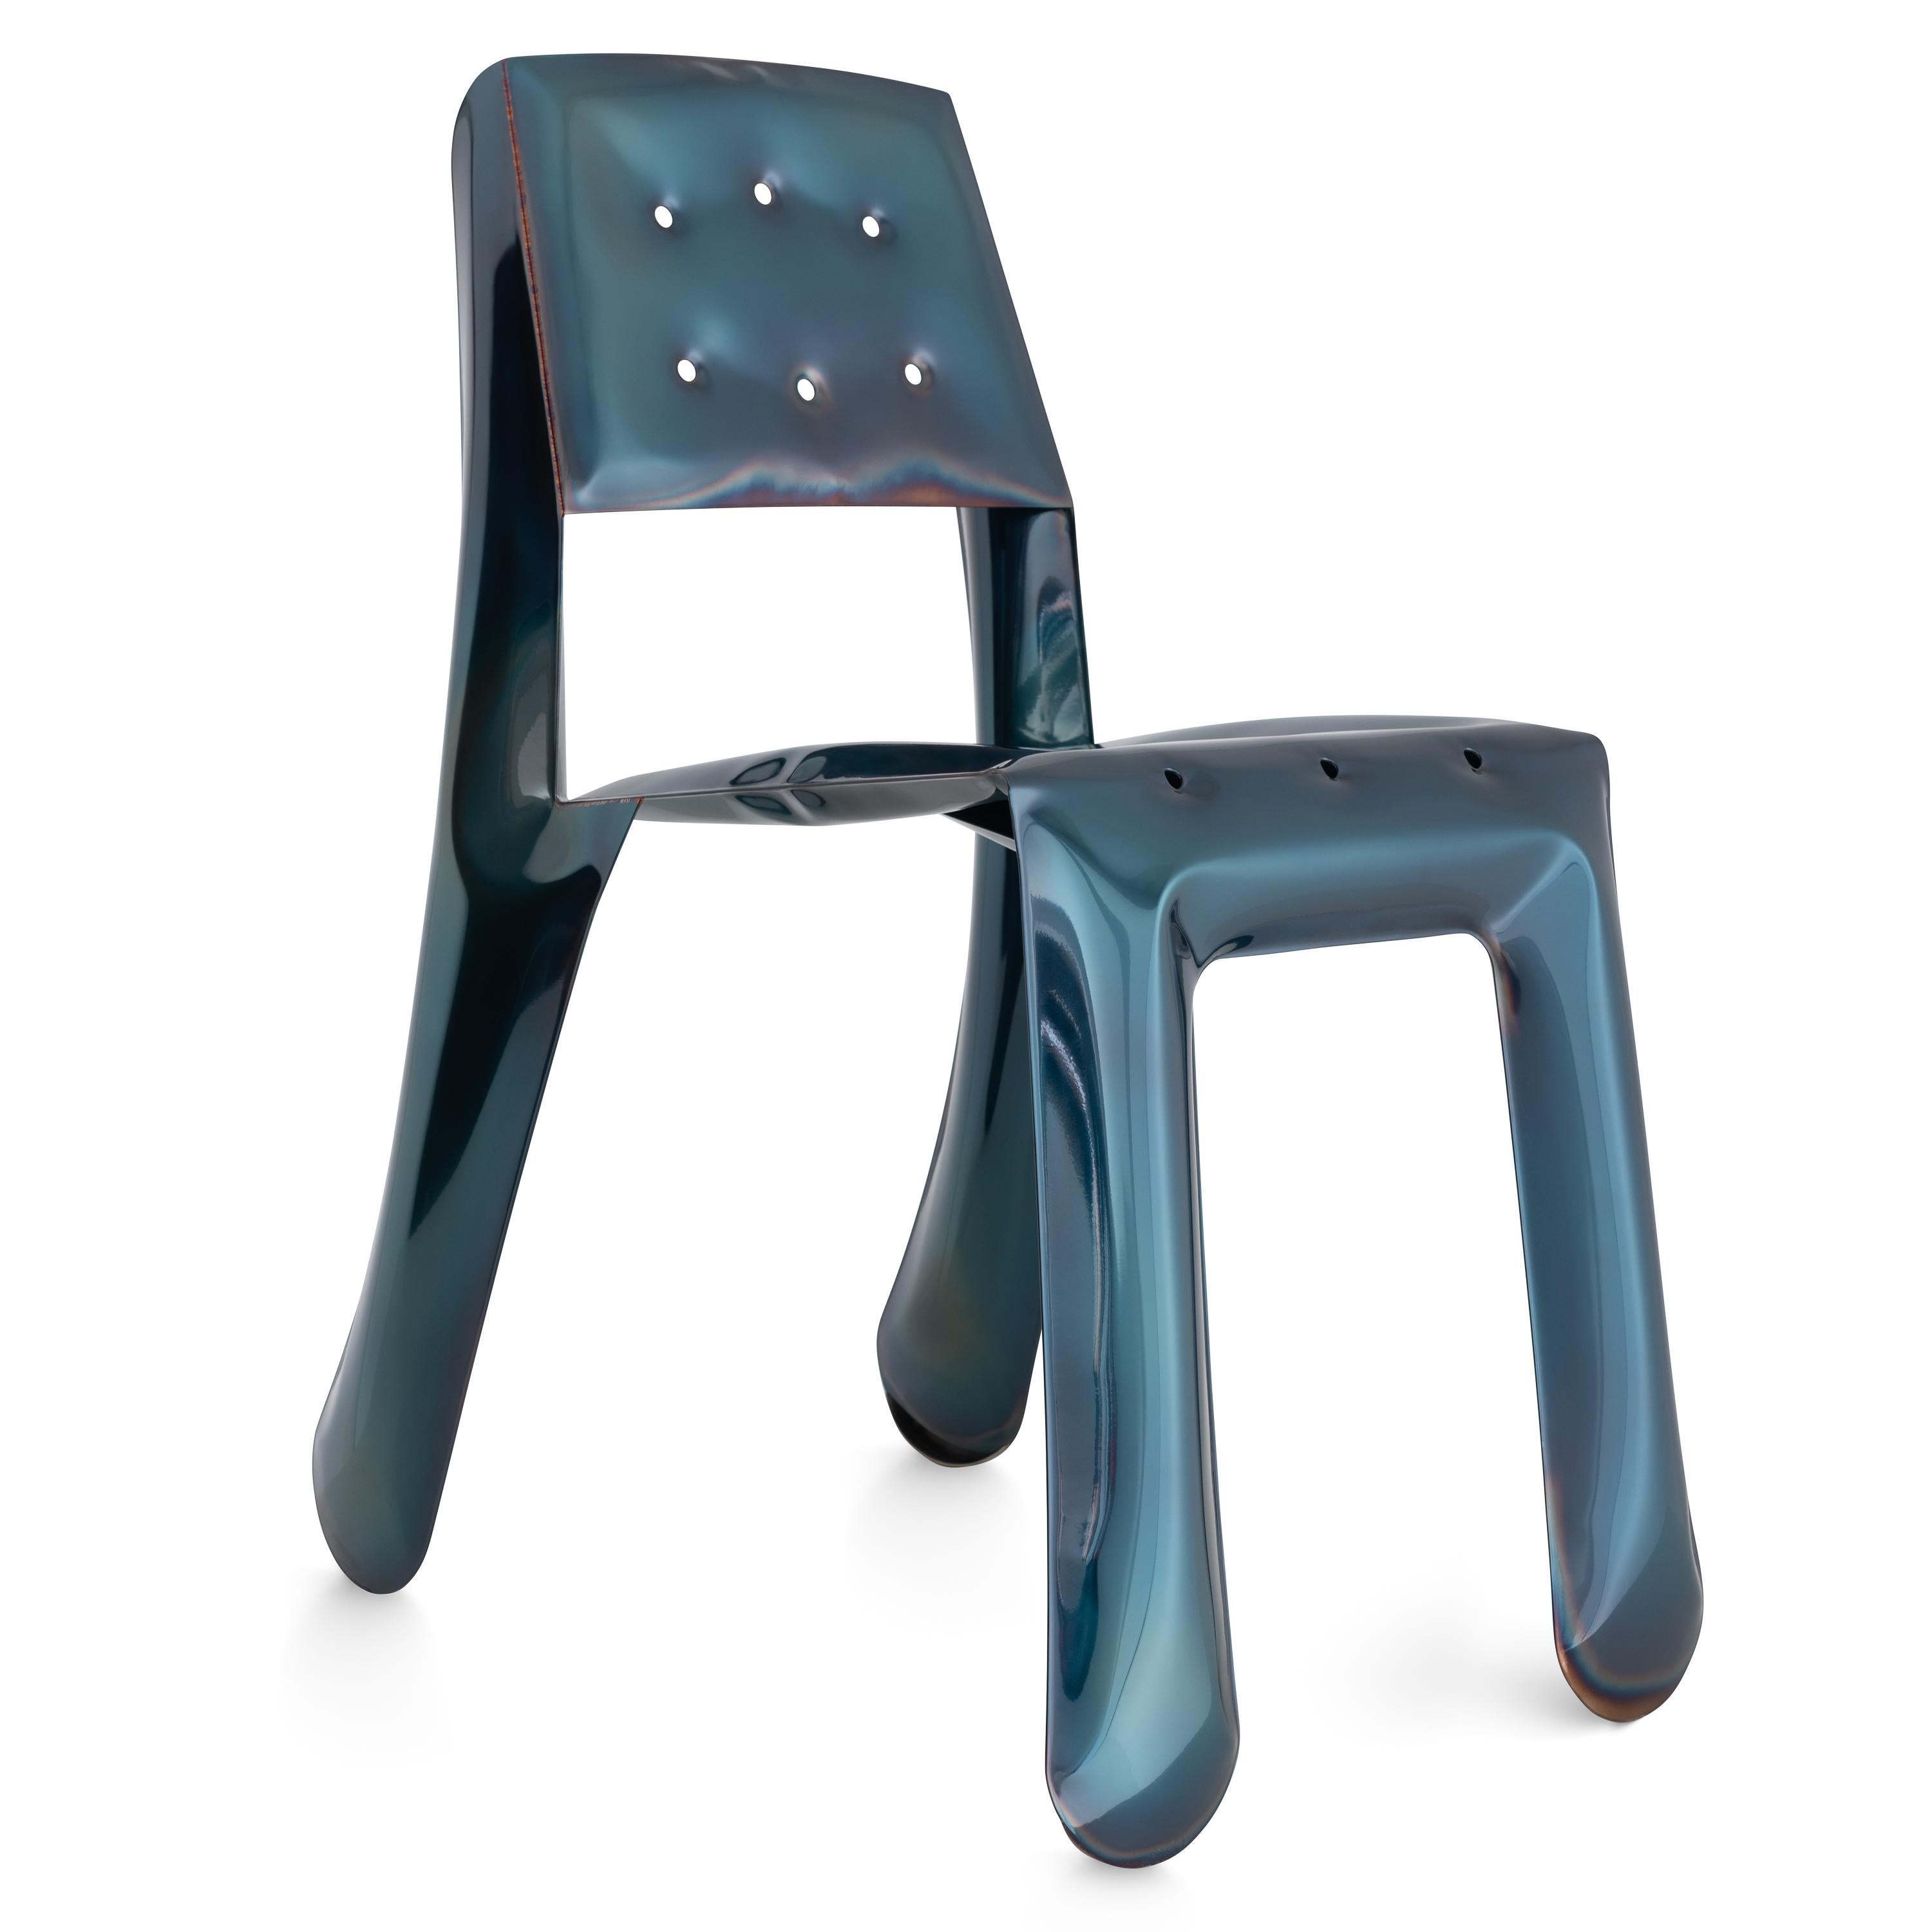 Cosmic Blue Chippensteel 0.5 Skulpturaler Stuhl von Zieta
Abmessungen: T 58 x B 46 x H 80 cm 
MATERIAL: rostfreier Stahl, Kohlenstoffstahl. 
Ausführung: thermisch gefärbt in Cosmic Blue. 
Erhältlich in den Farben: flamed gold und cosmic blue. Auch